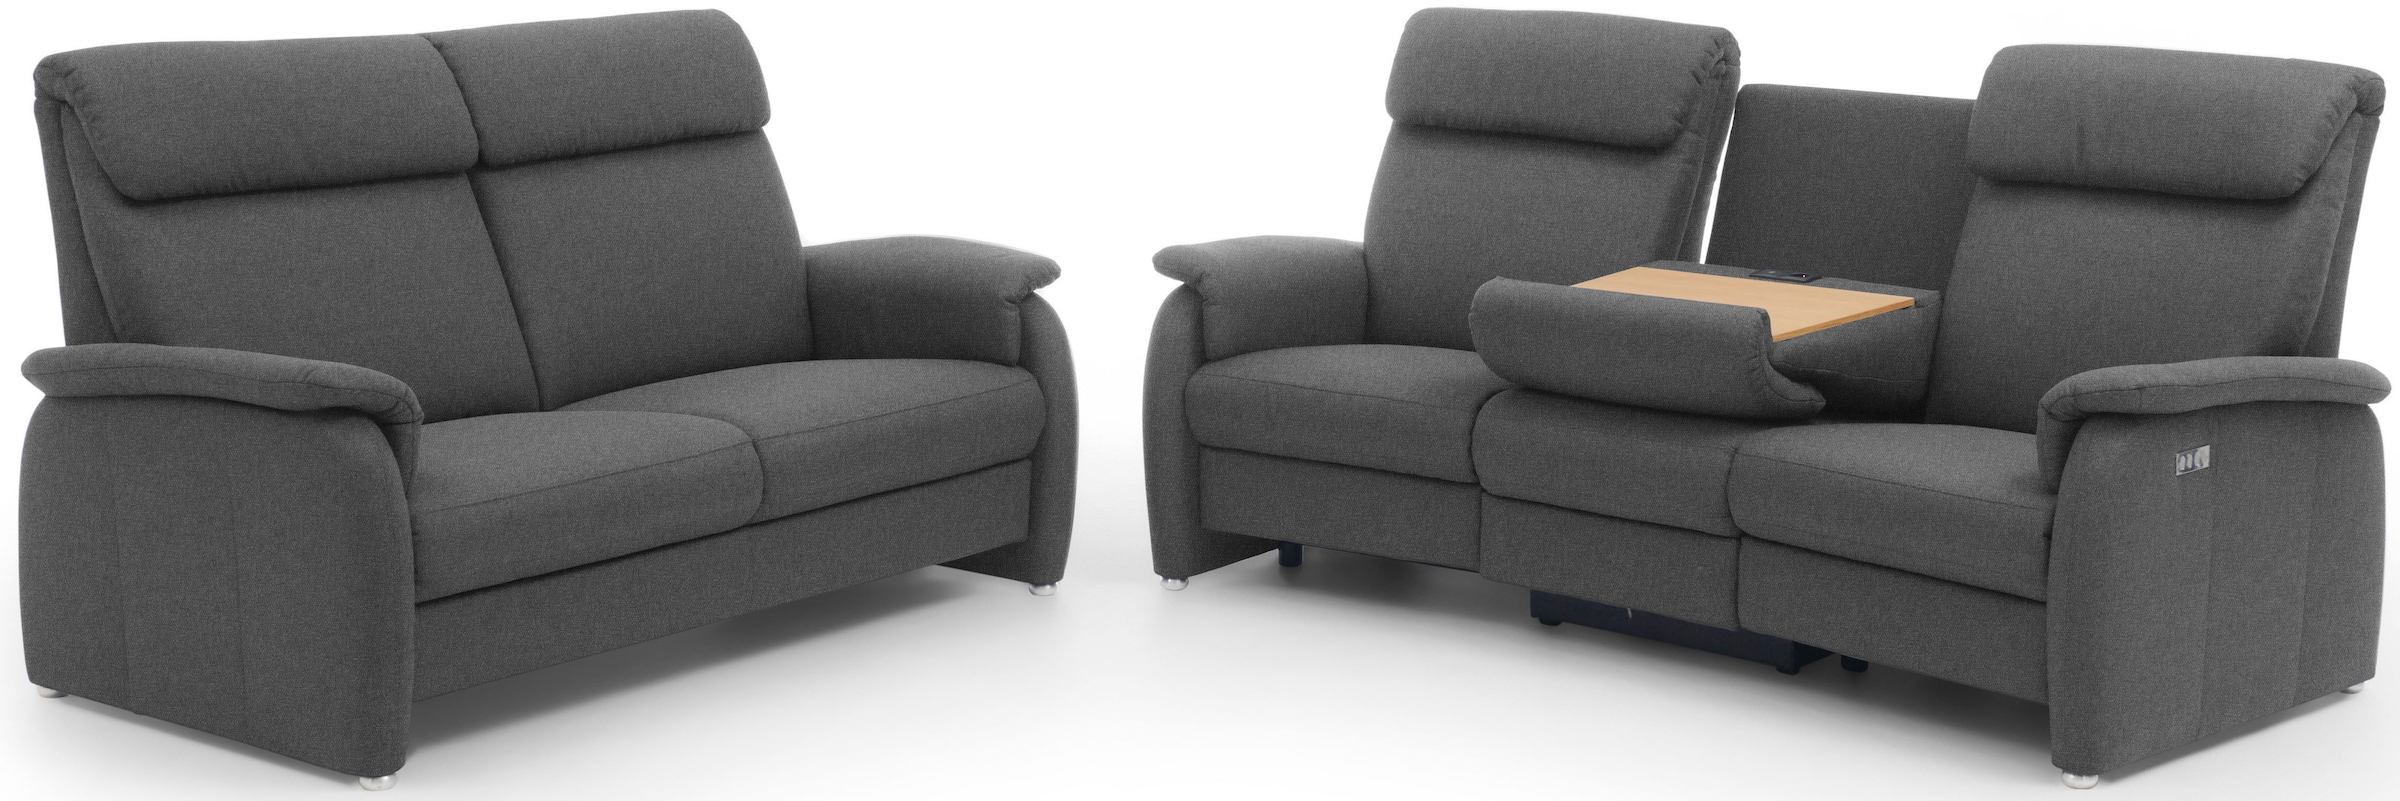 Home affaire 3-Sitzer »Turin mit Steckdose und USB-Port auch in Easy care-Bezug«, 2 x vollmotorische Relaxfunktion, herunterklappbarer Tisch